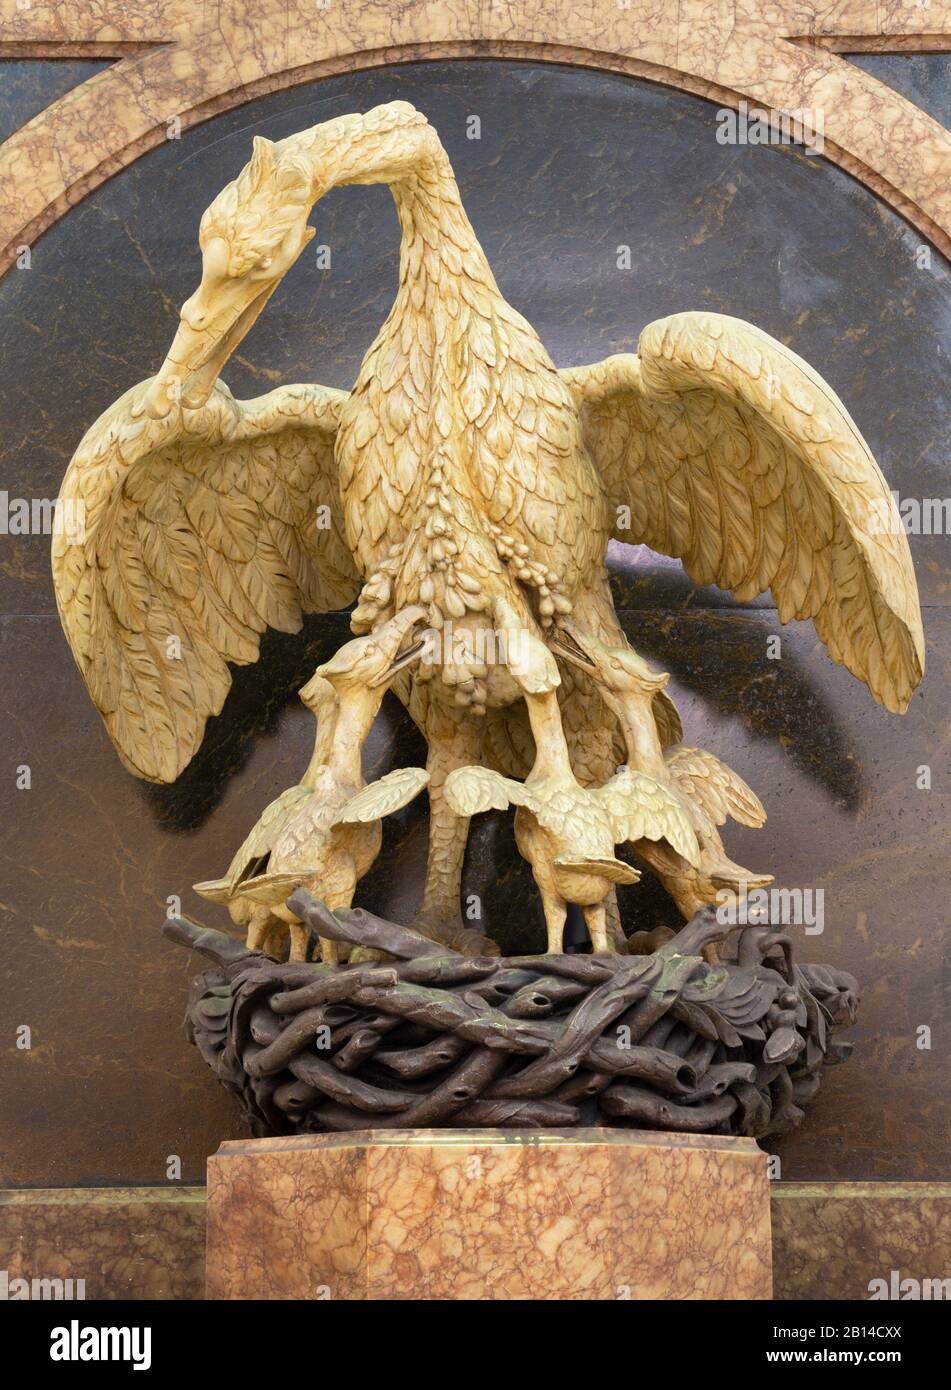 Londra, GRAN BRETAGNA - 14 SETTEMBRE 2017: La scultura di Pelican come simbolo di Gesù offre sulla croce nella chiesa di San Michele Cornhill. Foto Stock